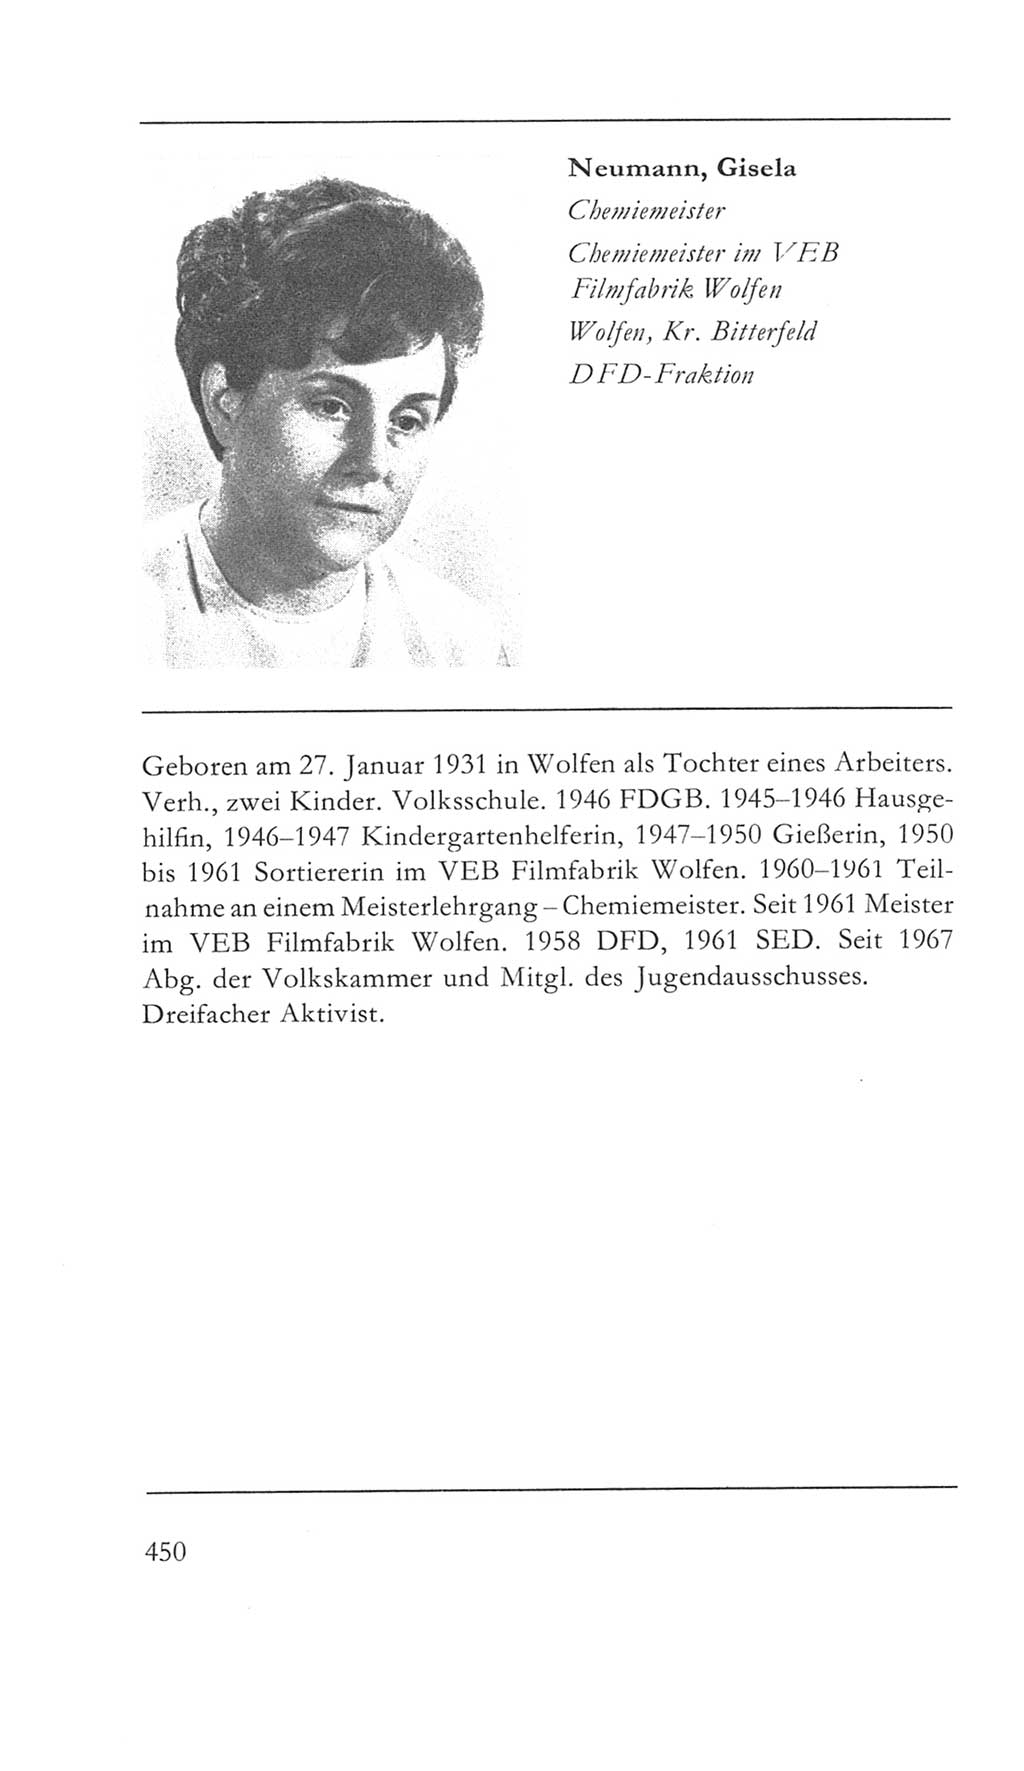 Volkskammer (VK) der Deutschen Demokratischen Republik (DDR) 5. Wahlperiode 1967-1971, Seite 450 (VK. DDR 5. WP. 1967-1971, S. 450)